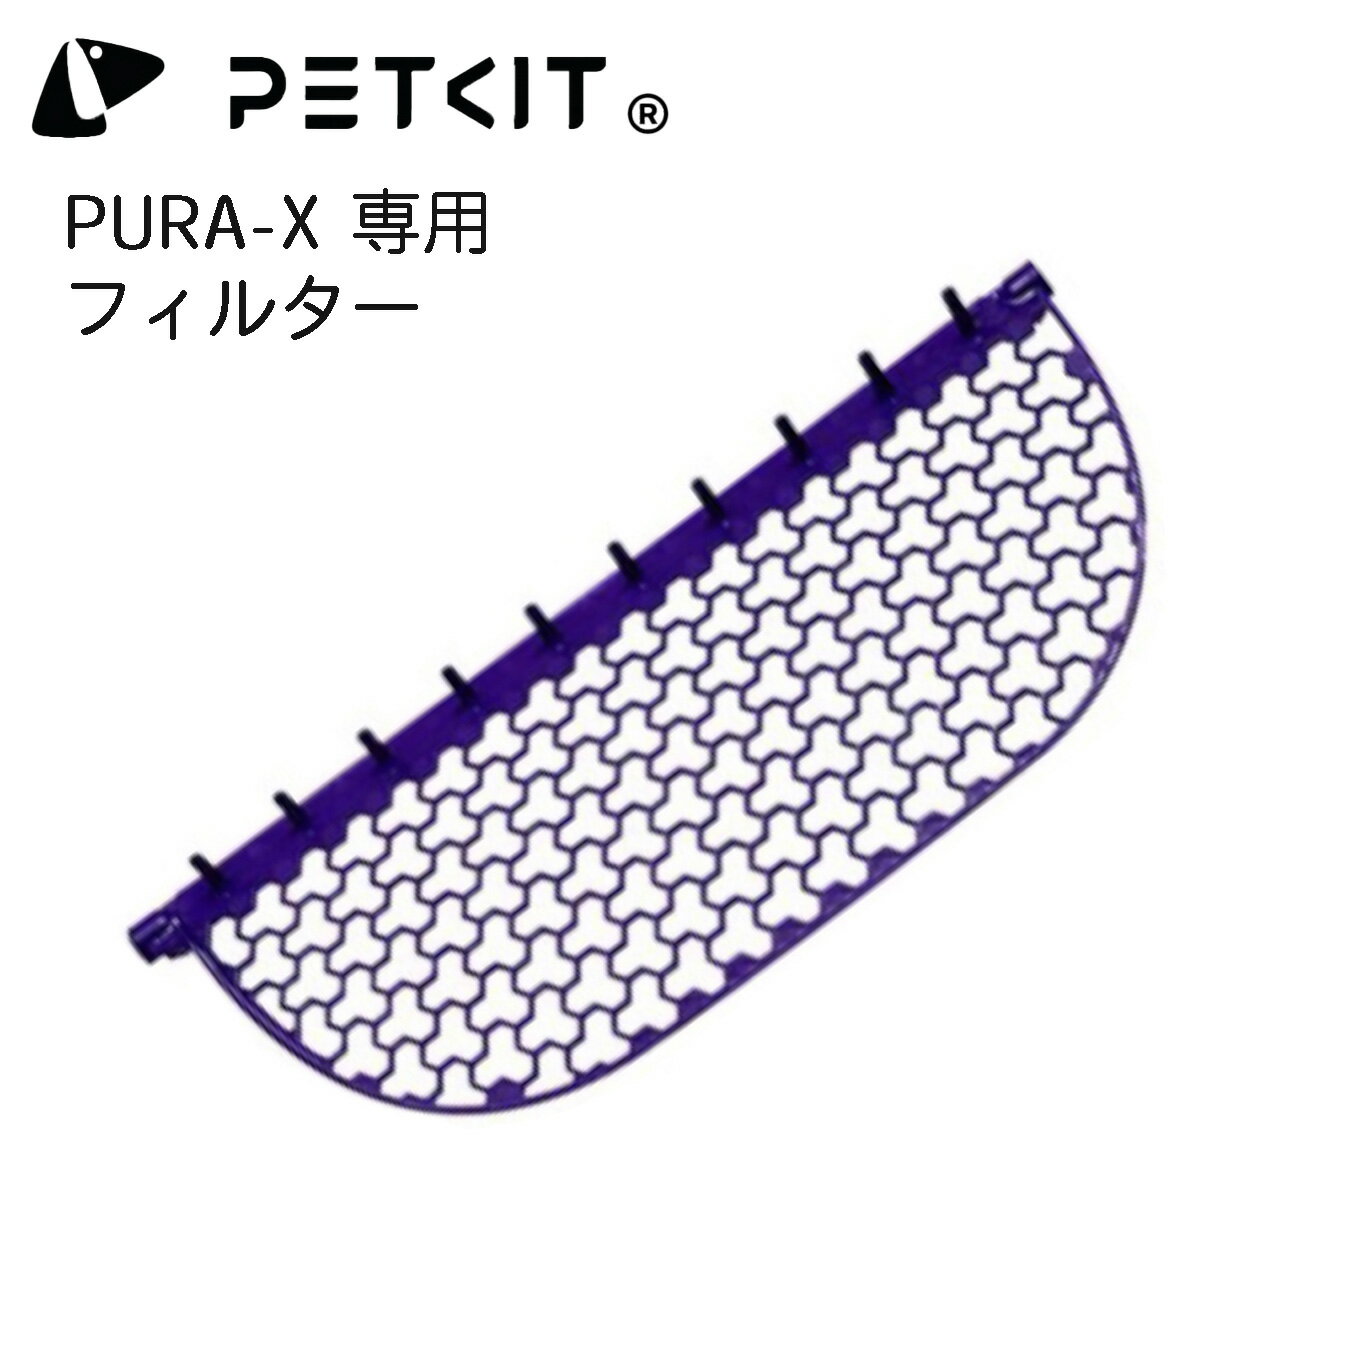 【PETKIT-PURA-X】フィルター 自動猫用トイレ専用フィルター 交換用フィルター ペットキット